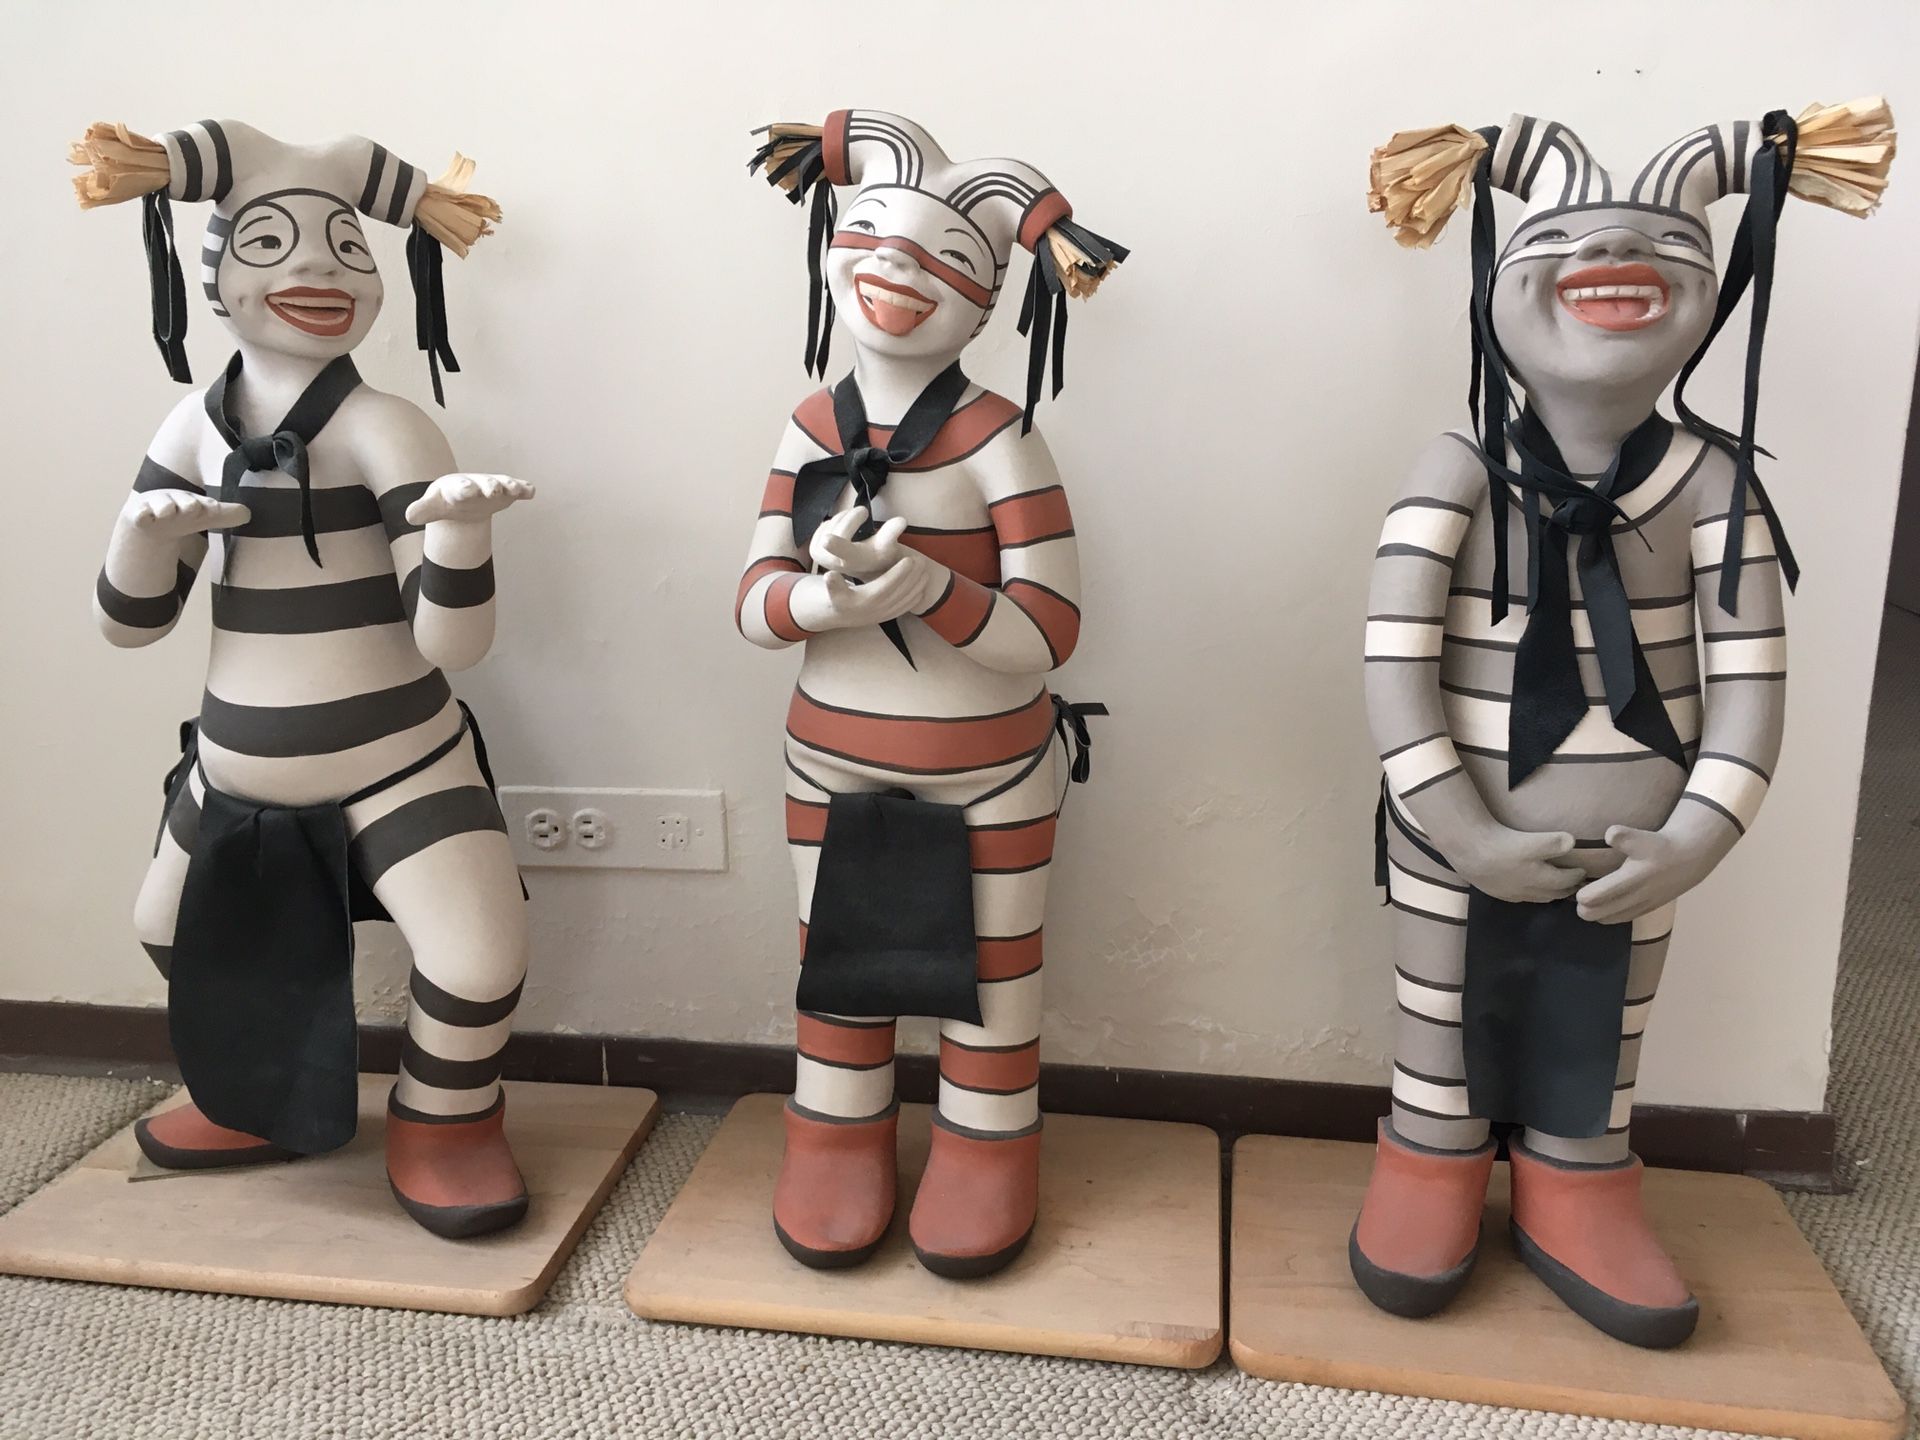 Native American ceramic sculptures